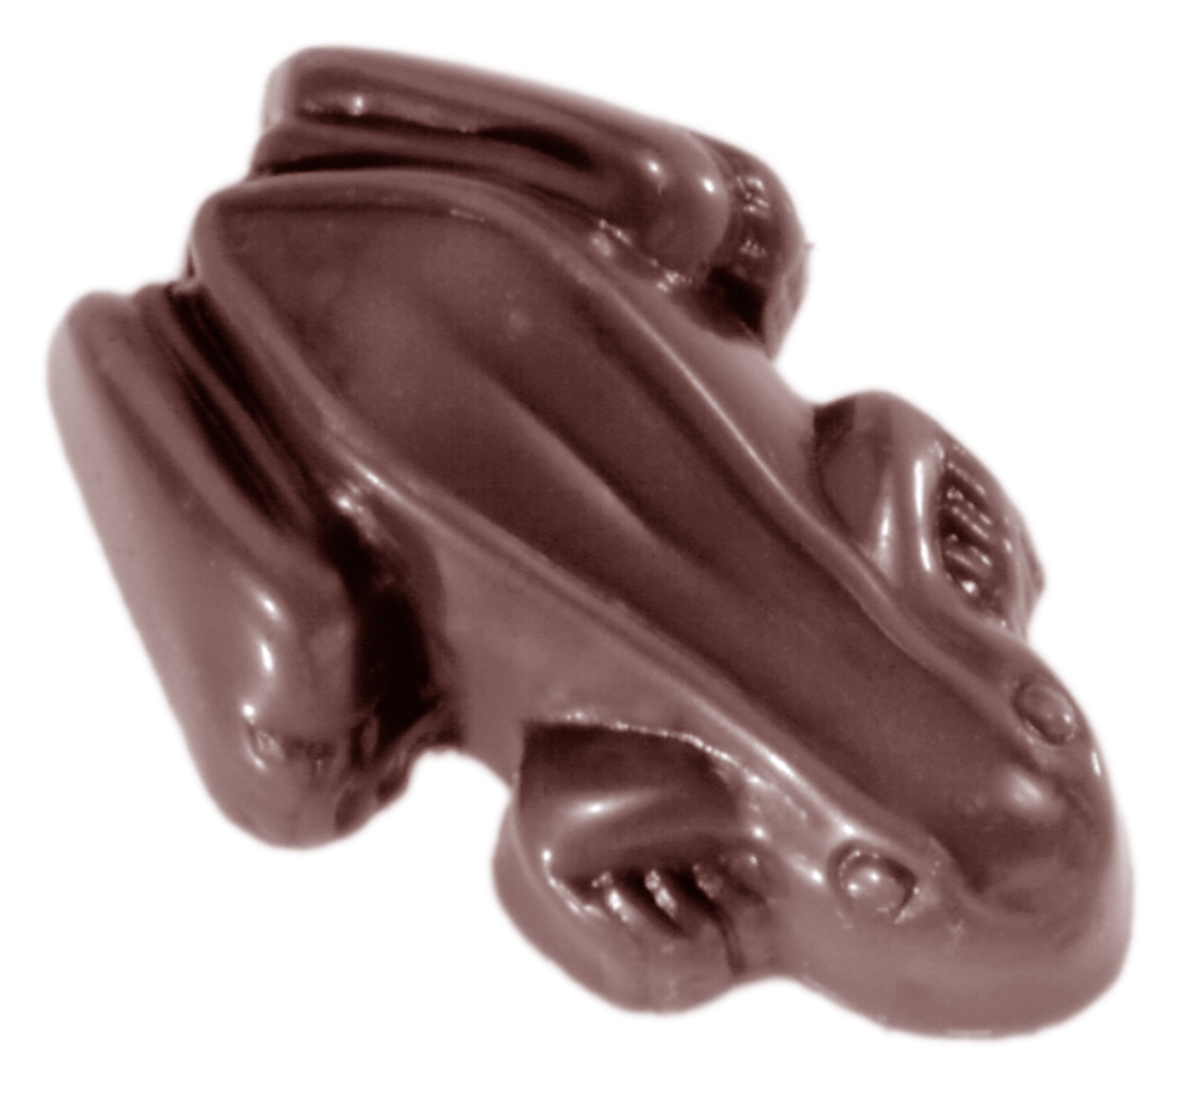 Se Professionel chokoladeform i polycarbonat - Frog 3 g CW1445 hos BageTid.dk